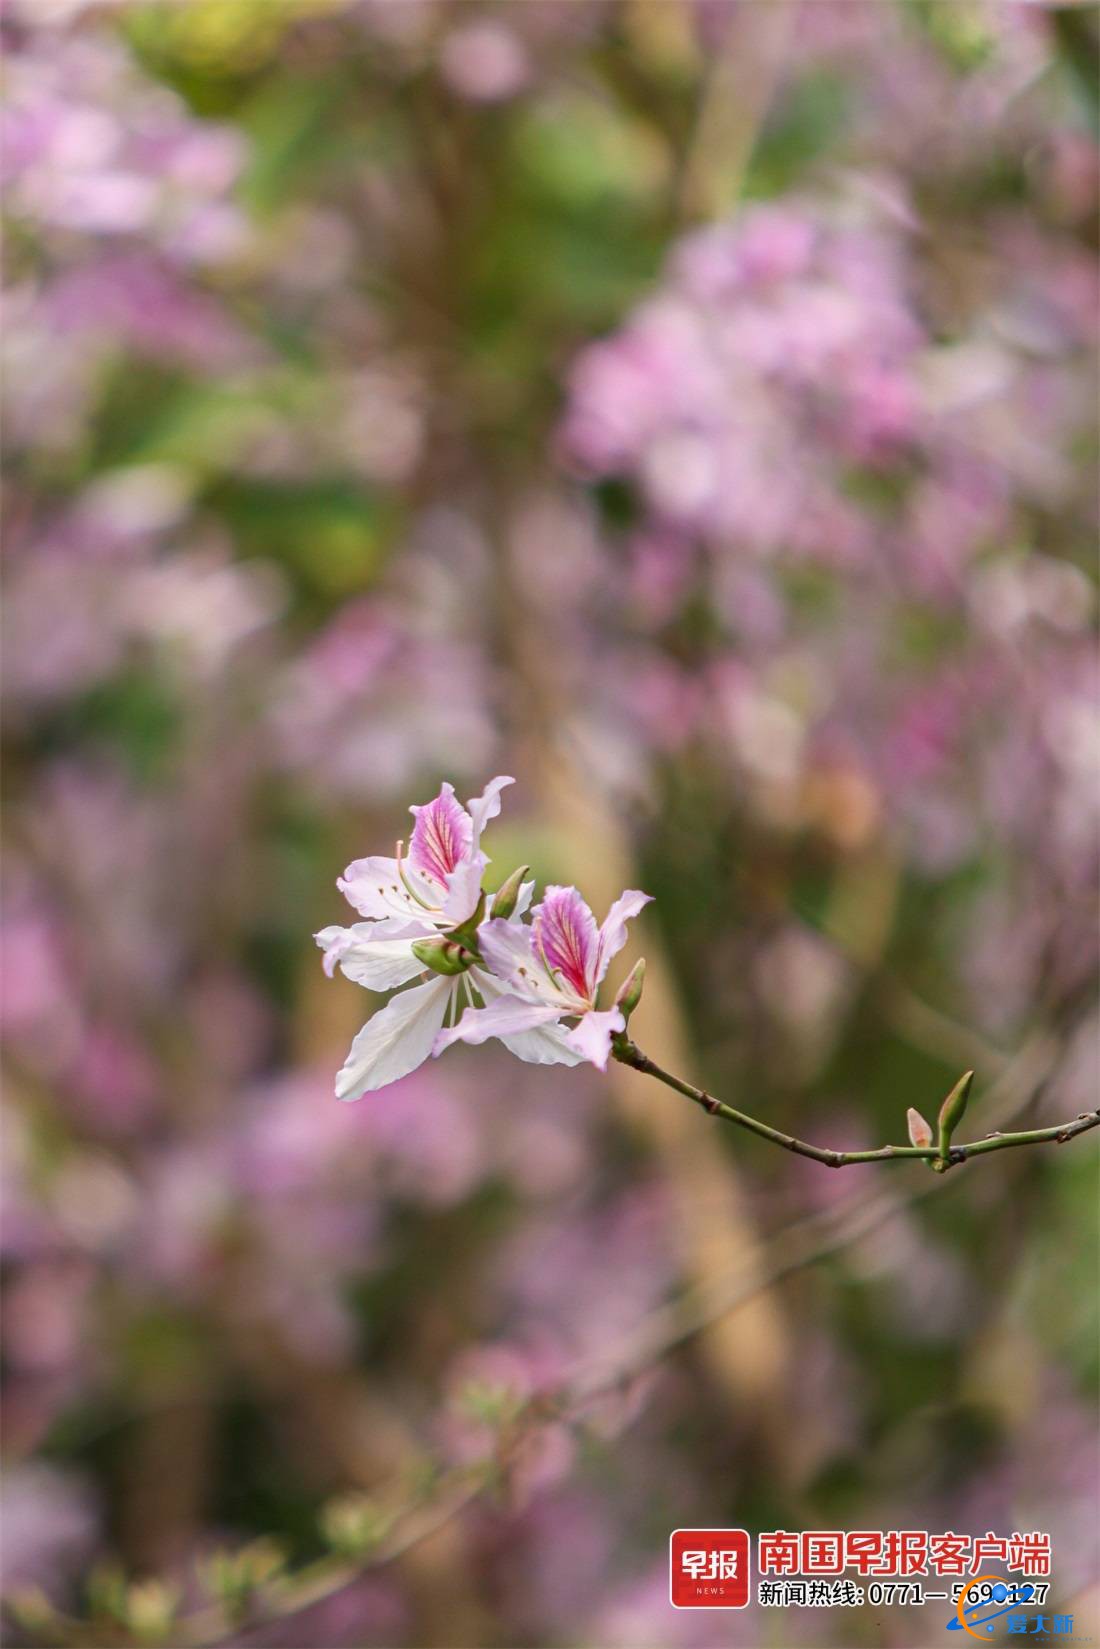 又到赏花时！一树一世界，邕城洋紫荆惊艳亮相-5.jpg